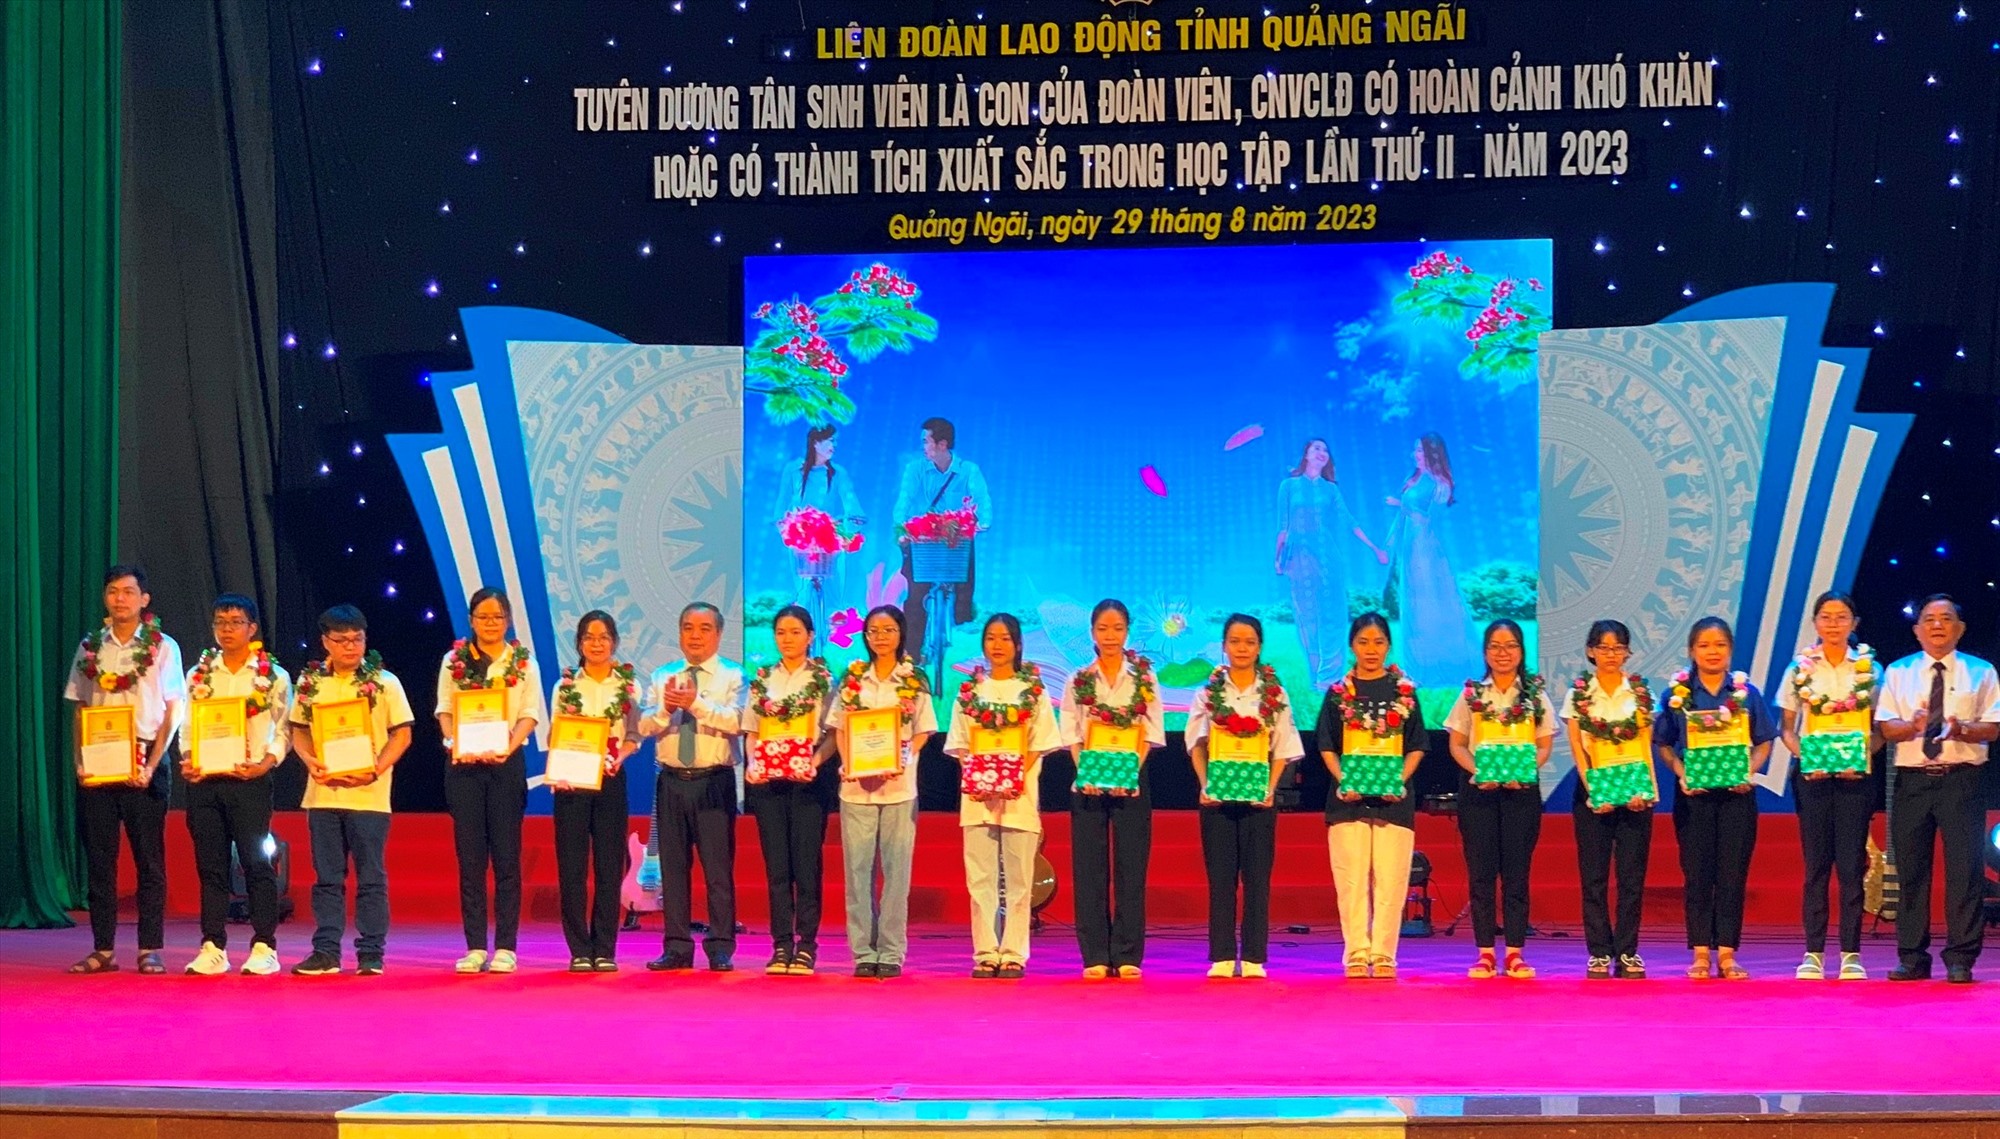 Liên đoàn Lao động tỉnh Quảng Ngãi tuyên dương 350 tân sinh viên xuất sắc